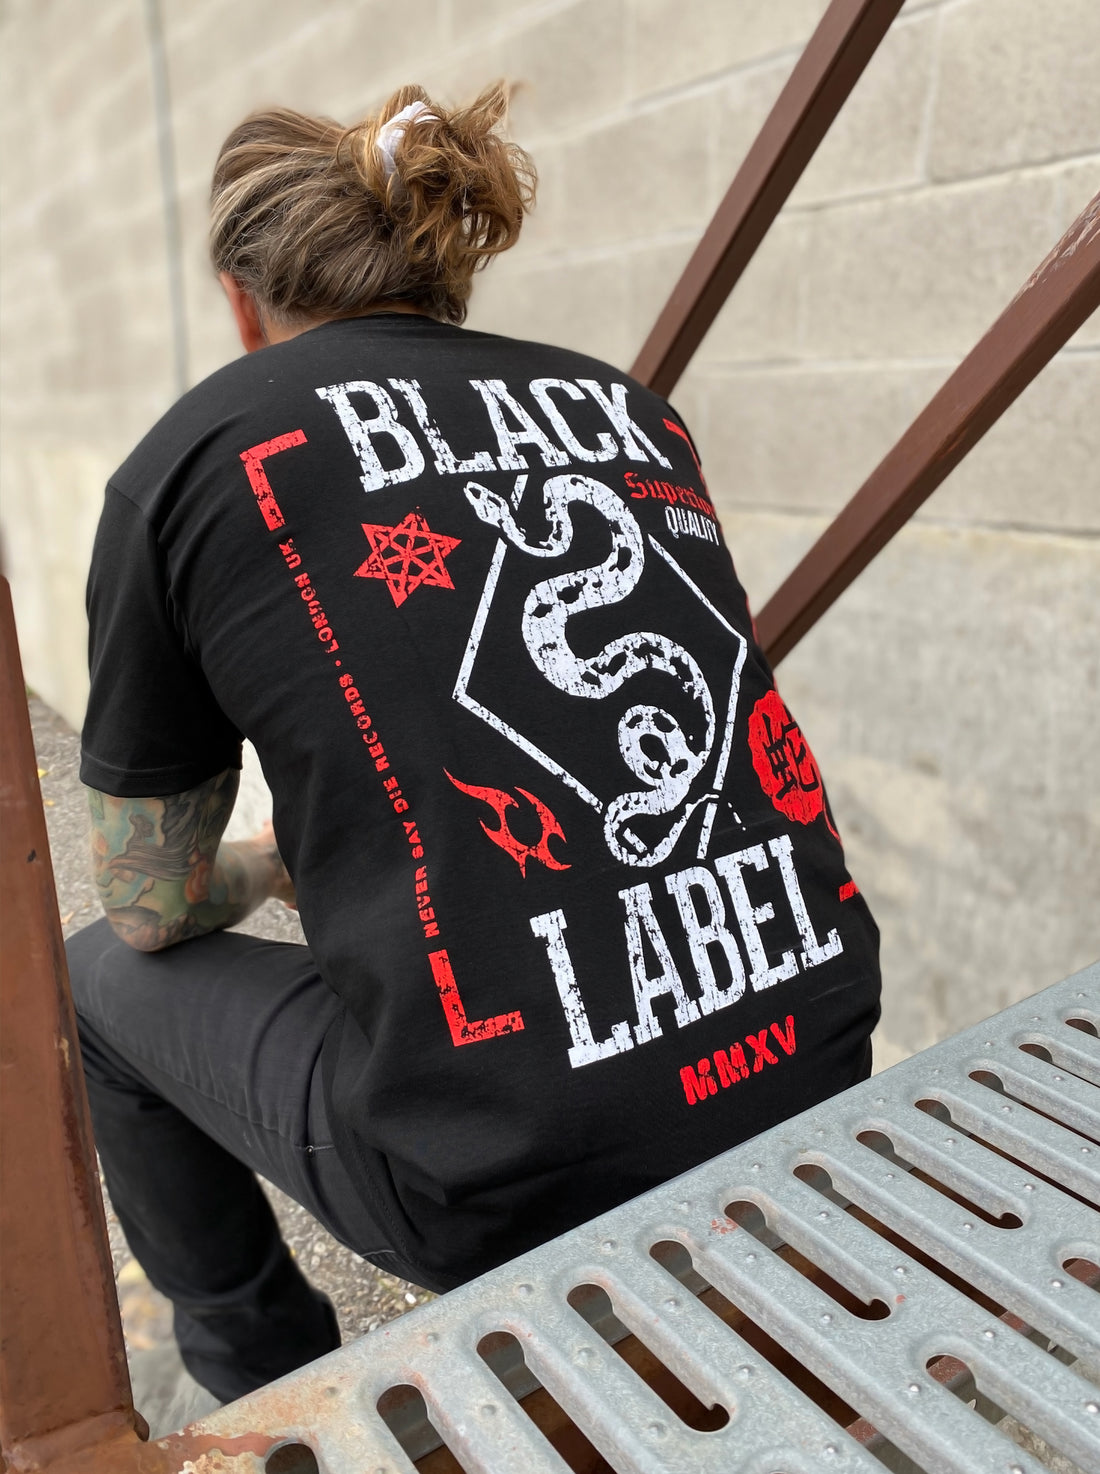 Black Label - Snakewine - Black Tee